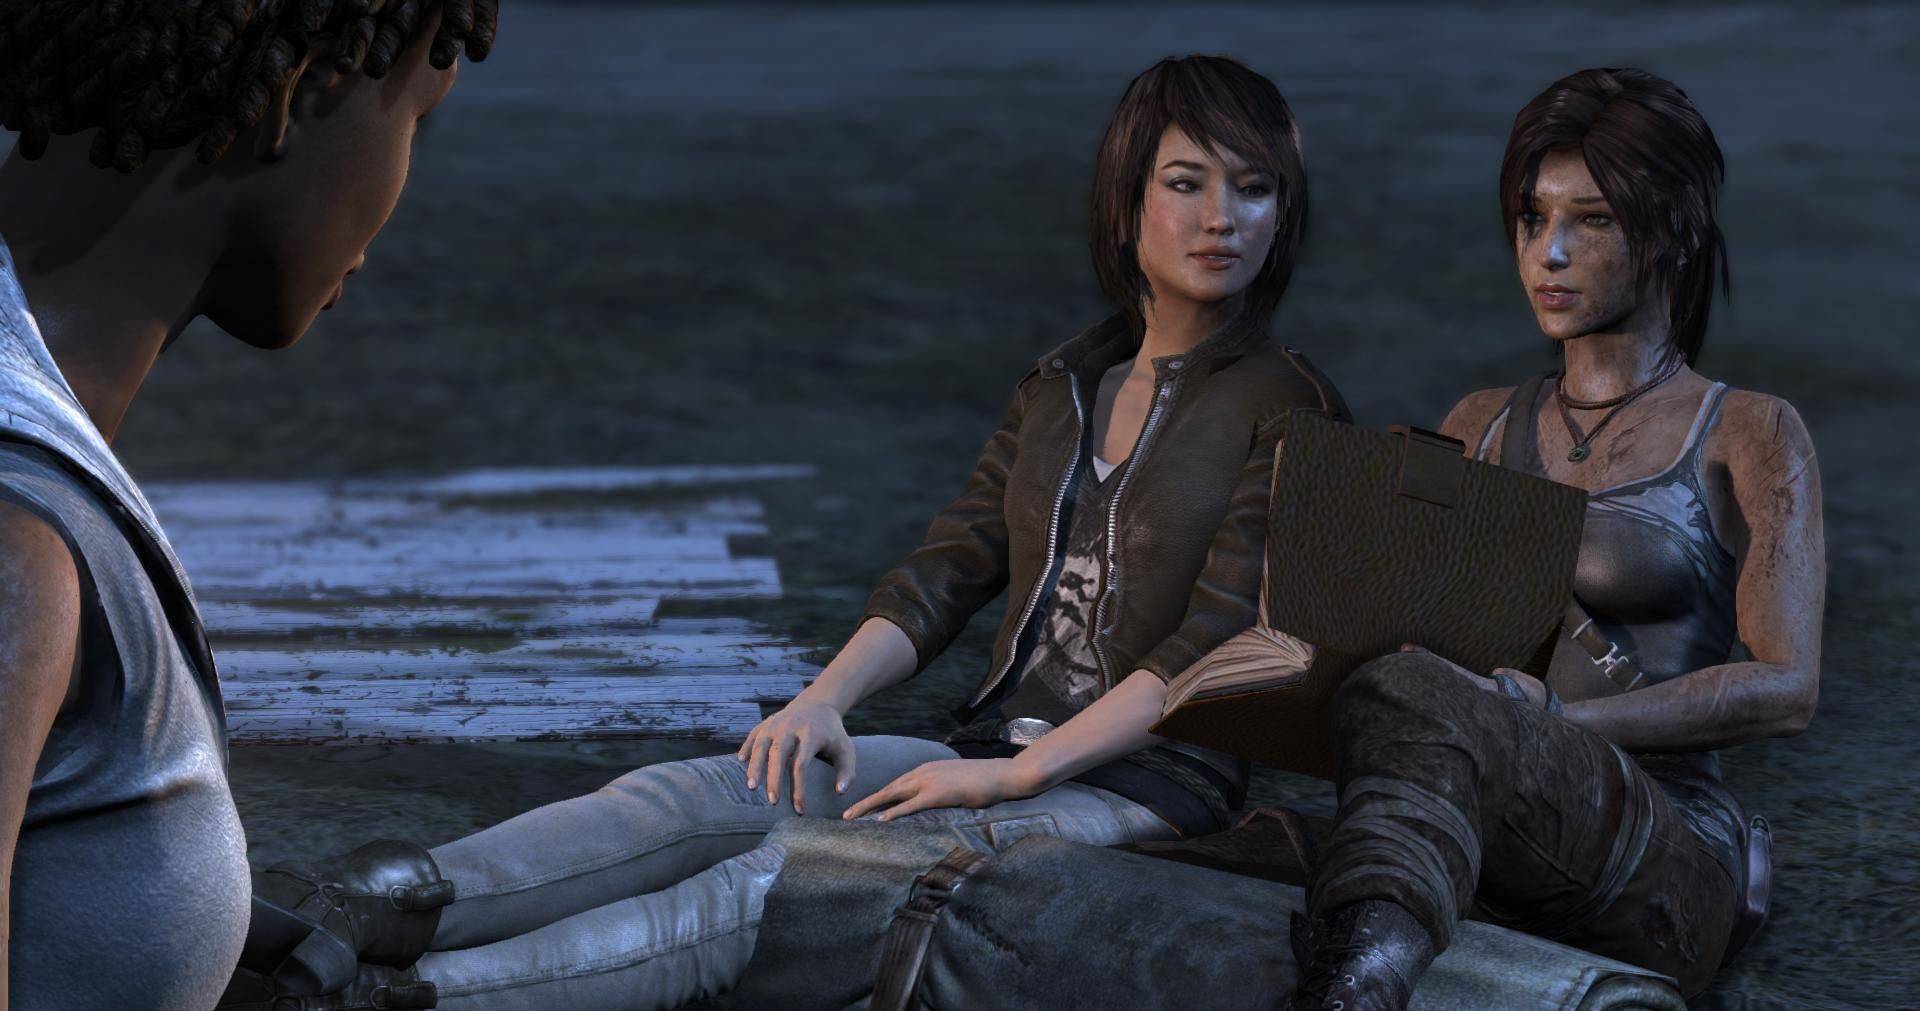 Lara croft and sam